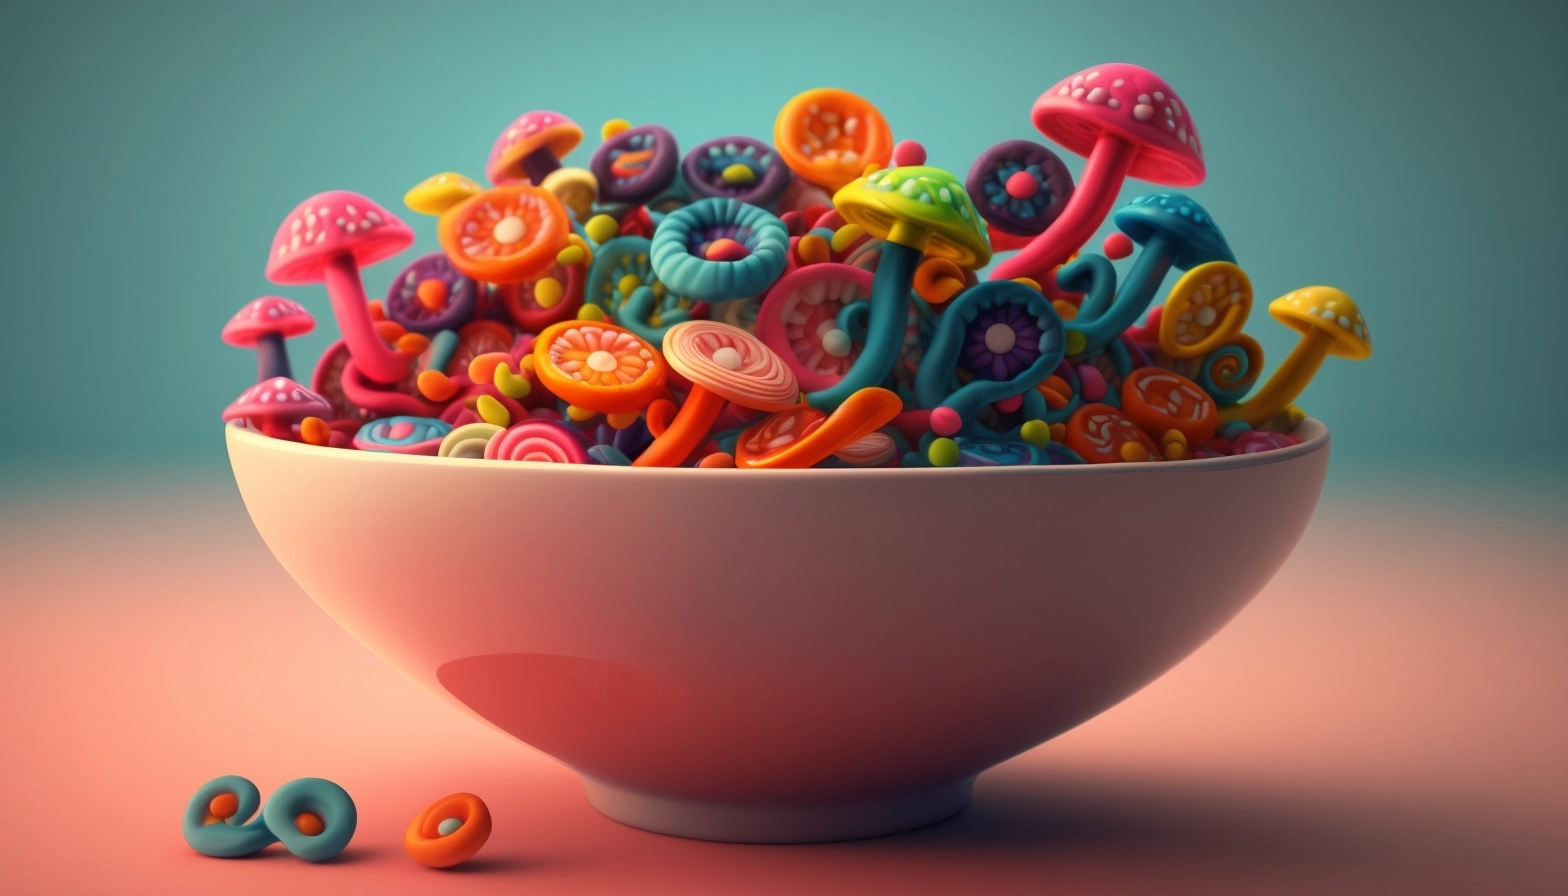 A colorful bowl of magic mushroom shroom gummies